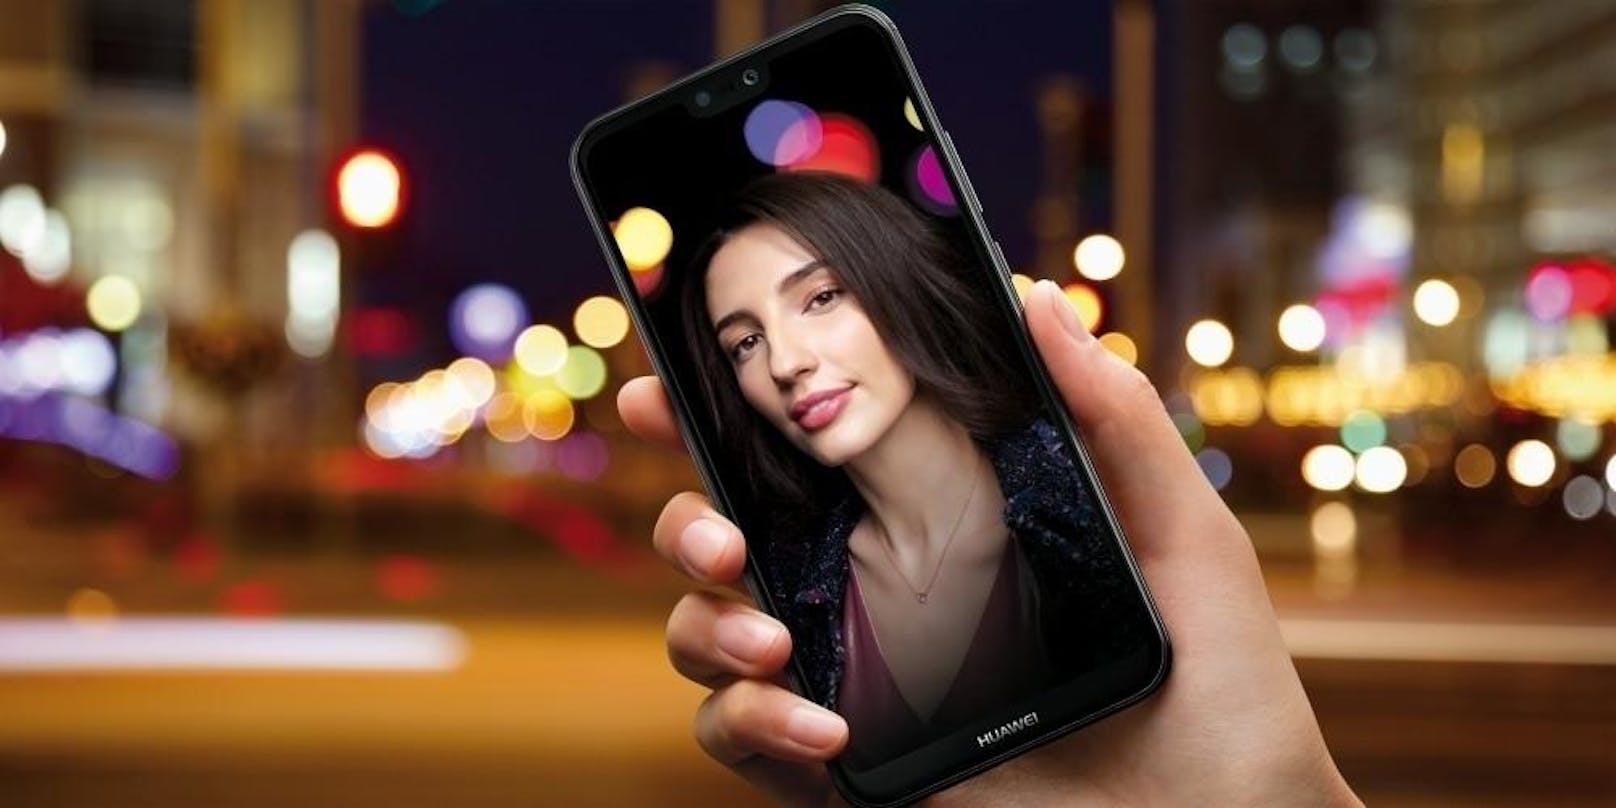 Dank des Bokeh-Objektivs und Algorithmen soll das Huawei P20 lite mit einer Dual-Kamera auf der Rückseite laut Hersteller Porträts in Studioqualität ermöglichen.